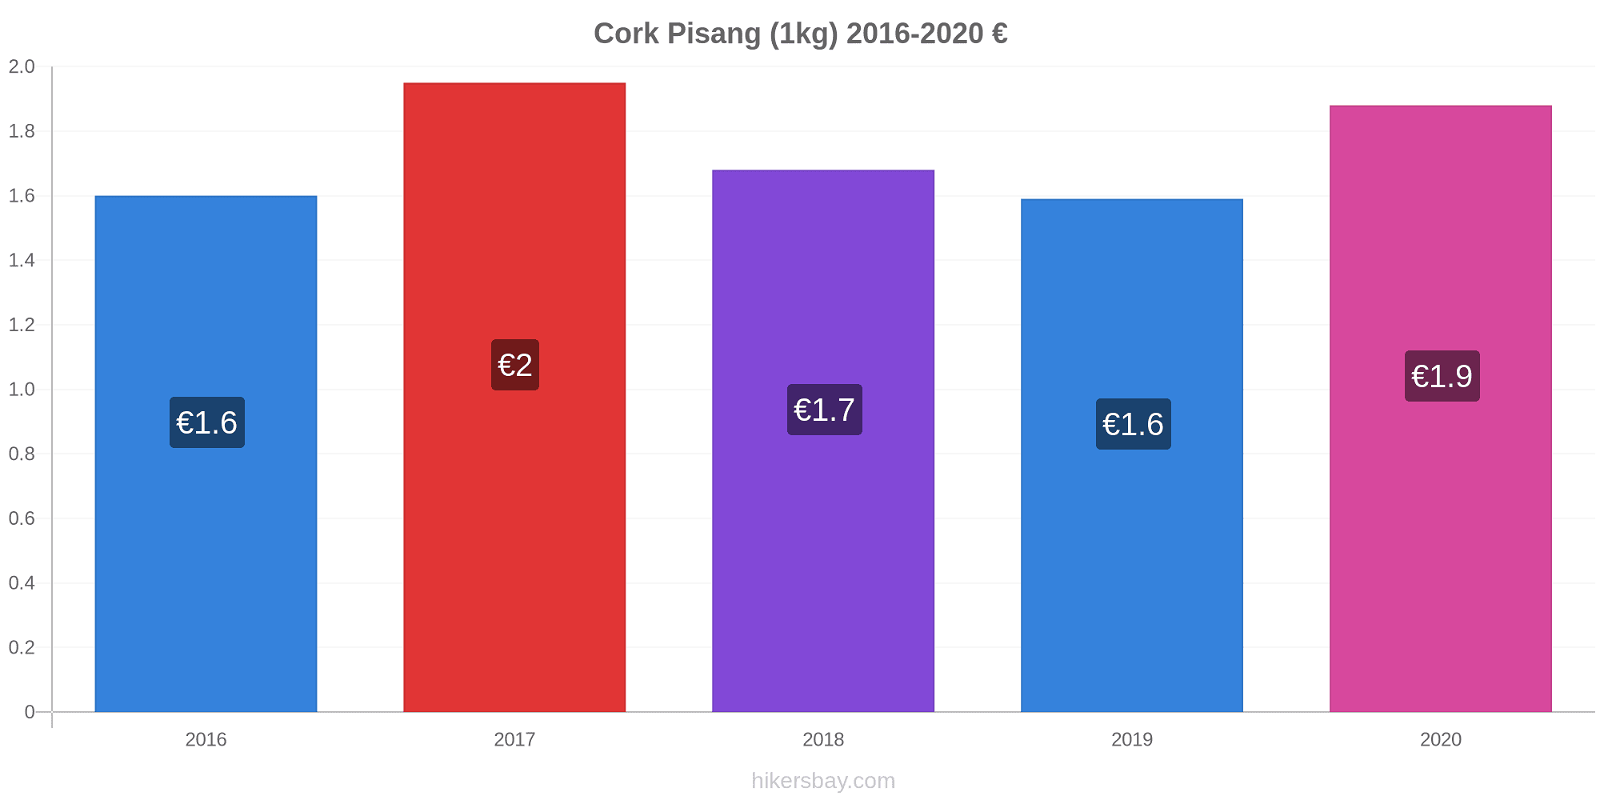 Cork perubahan harga Pisang (1kg) hikersbay.com